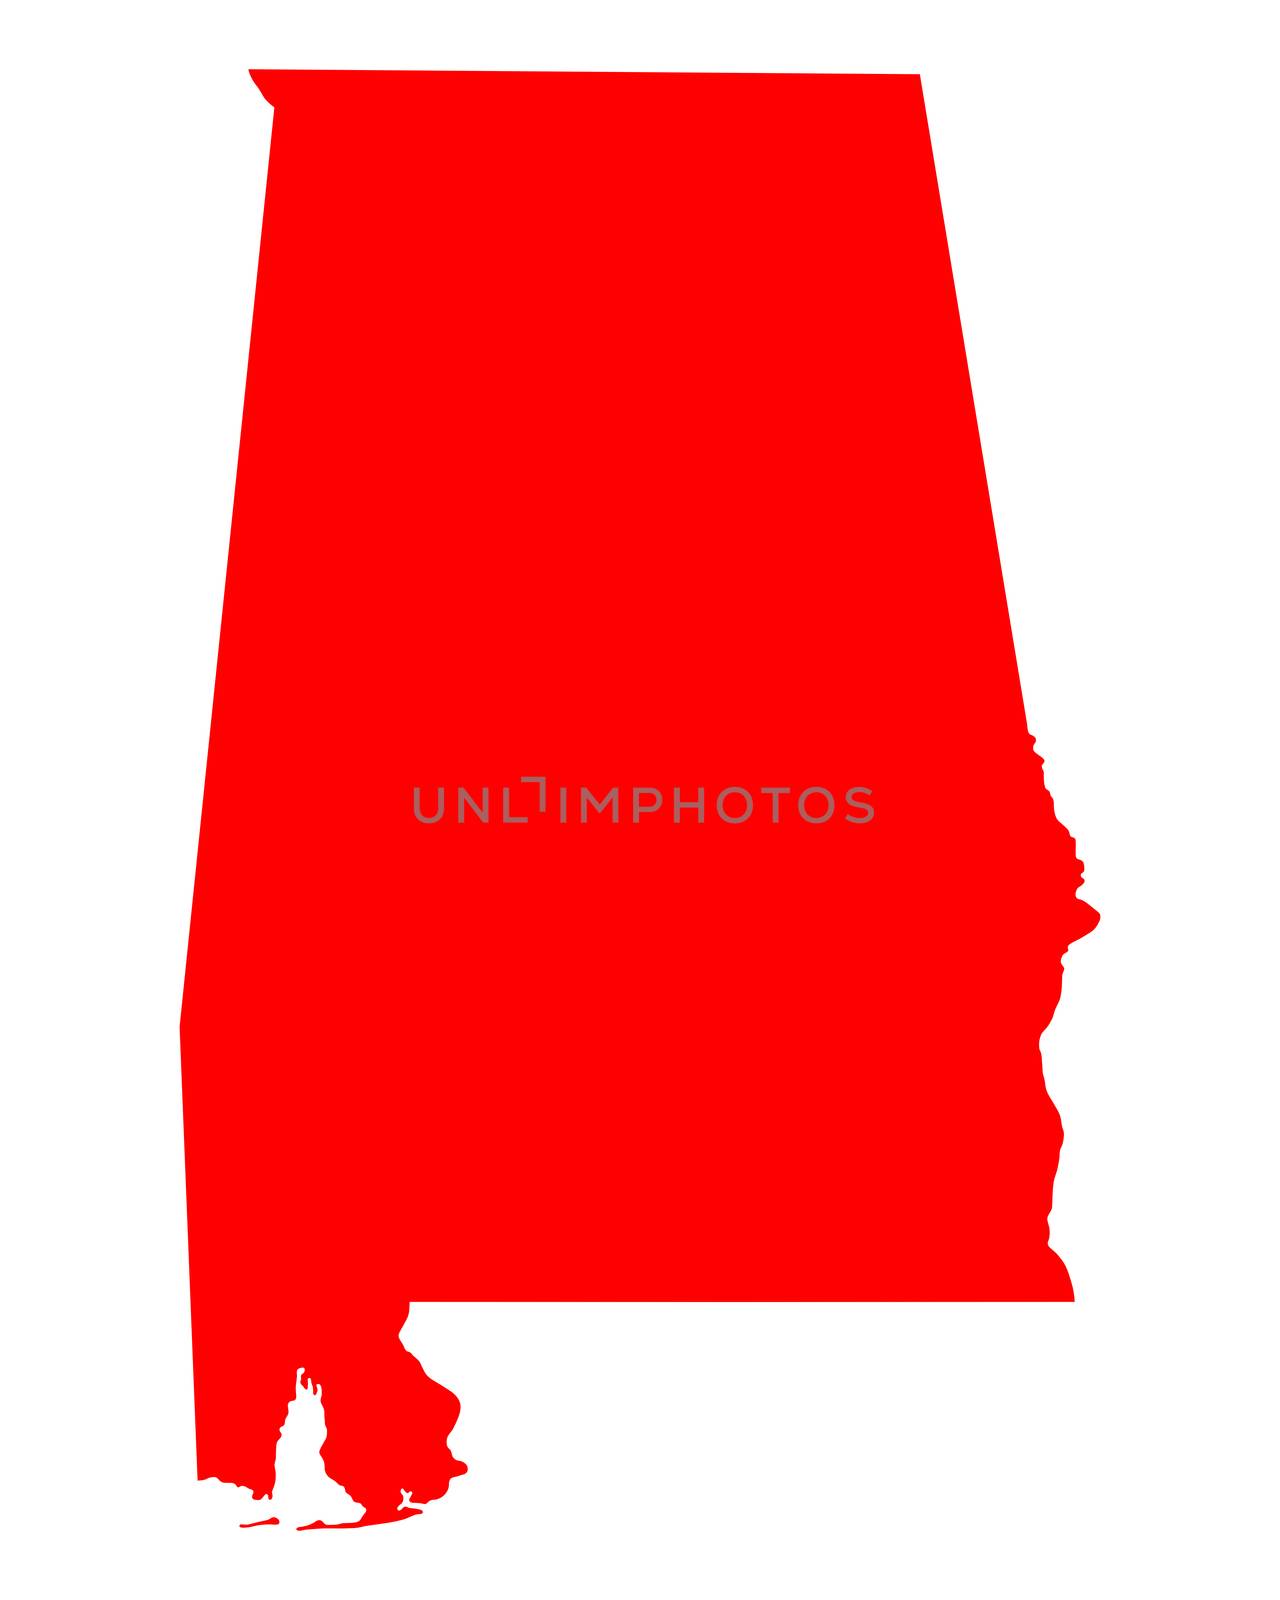 Map of Alabama by rbiedermann